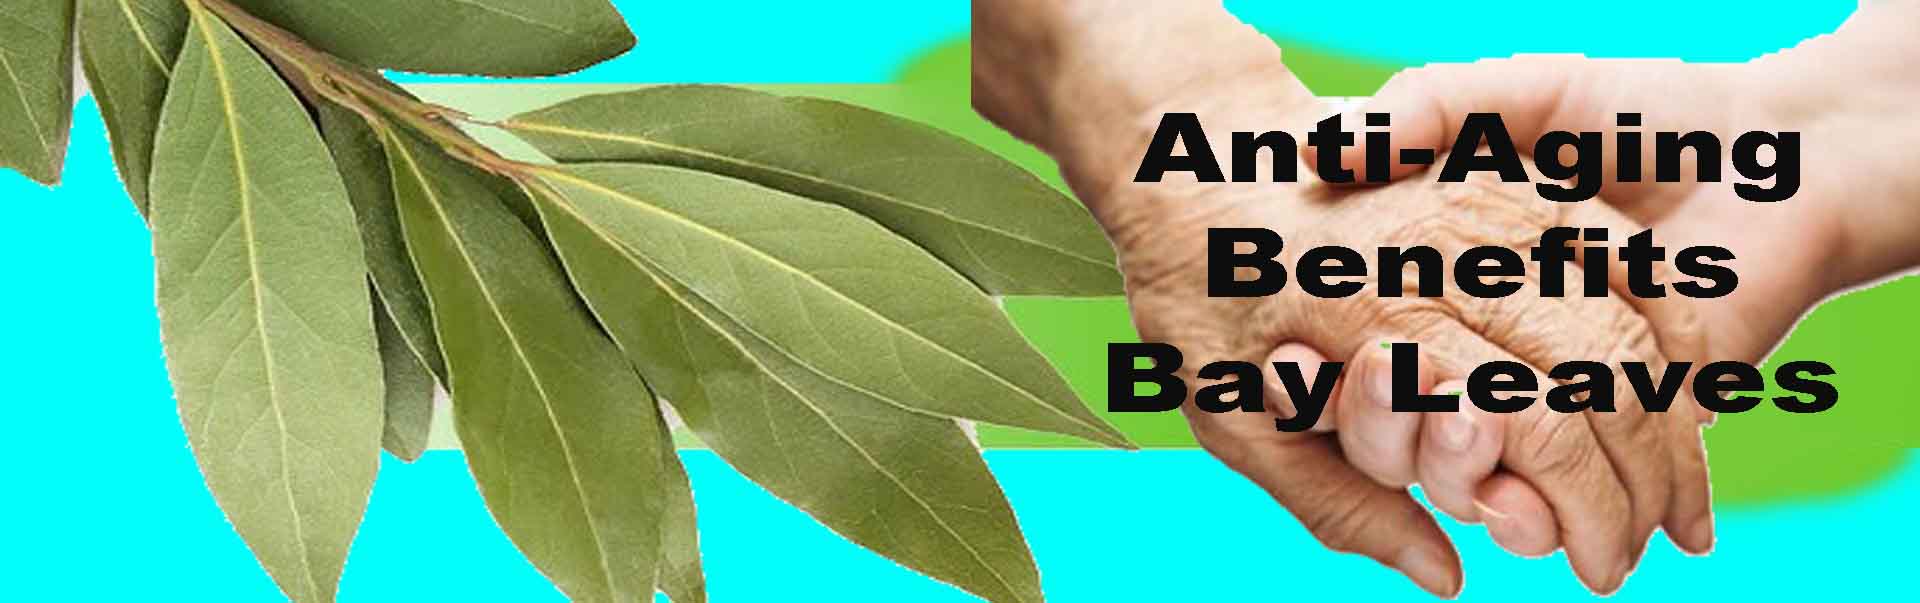 Bay Leaves help against Anti Aging